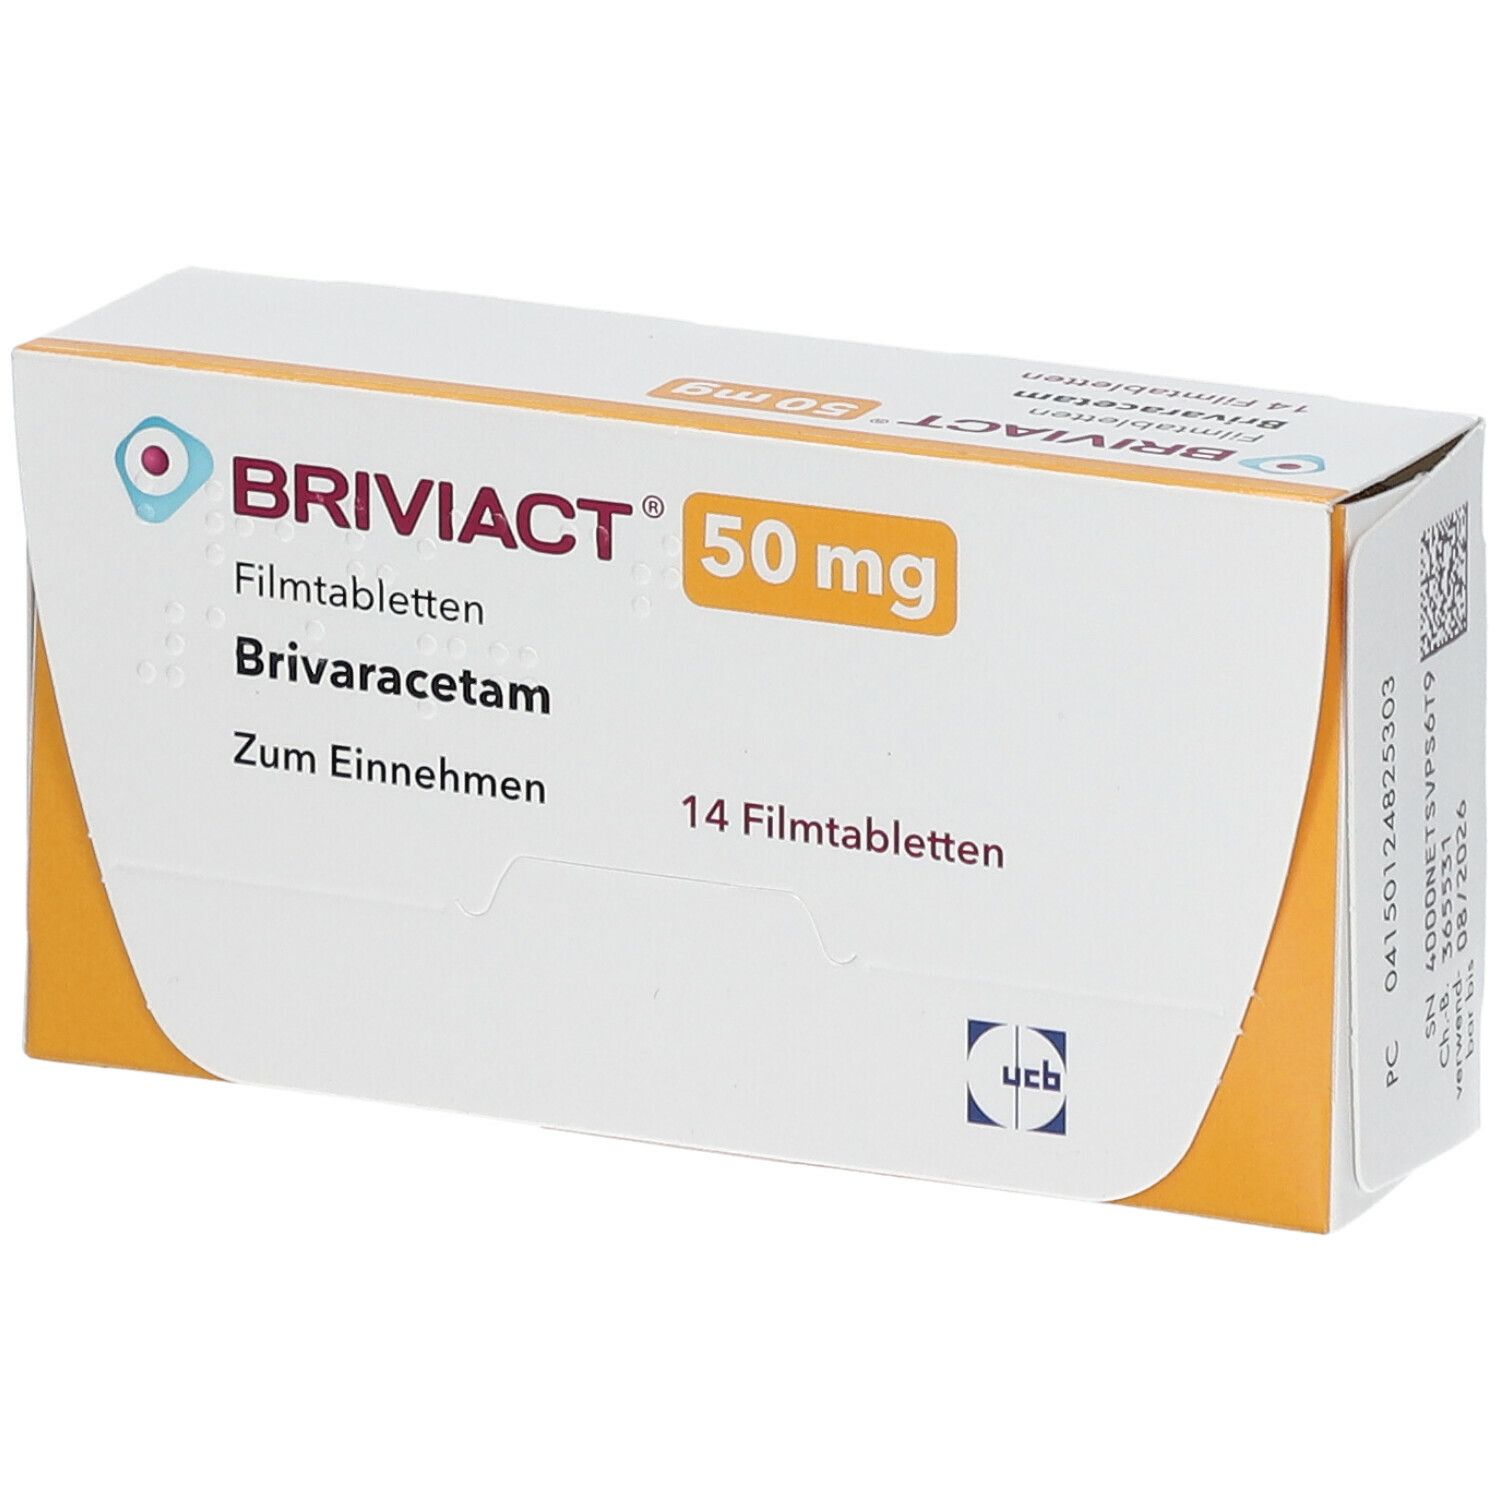 BRIVIACT® 50 mg